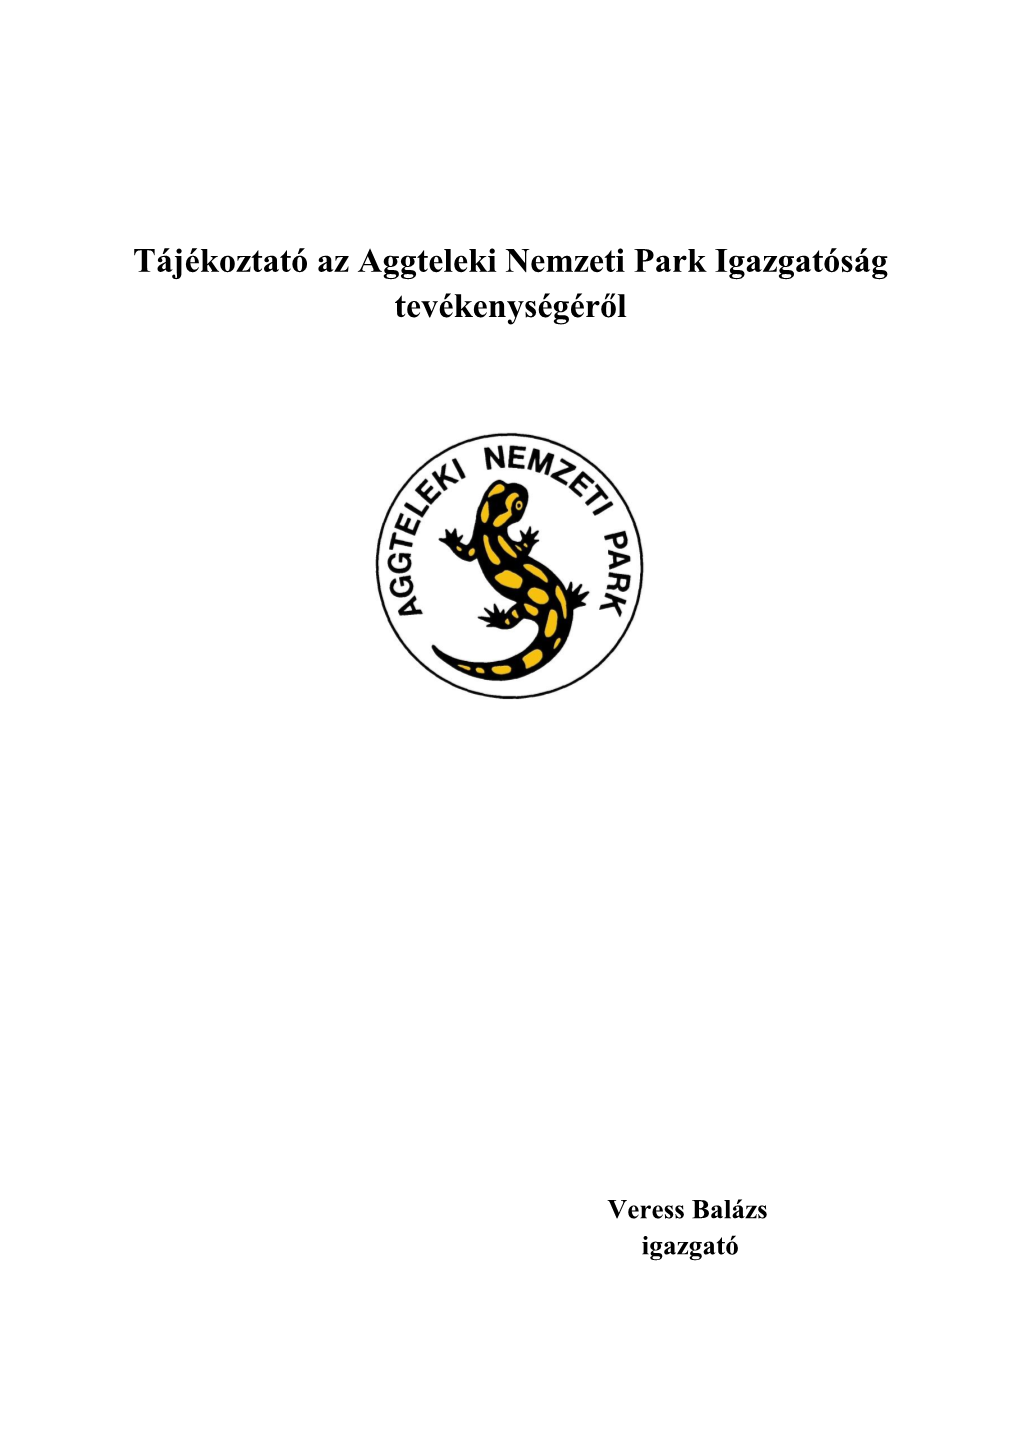 Aggteleki Nemzeti Park Igazgatóság Tevékenységéről